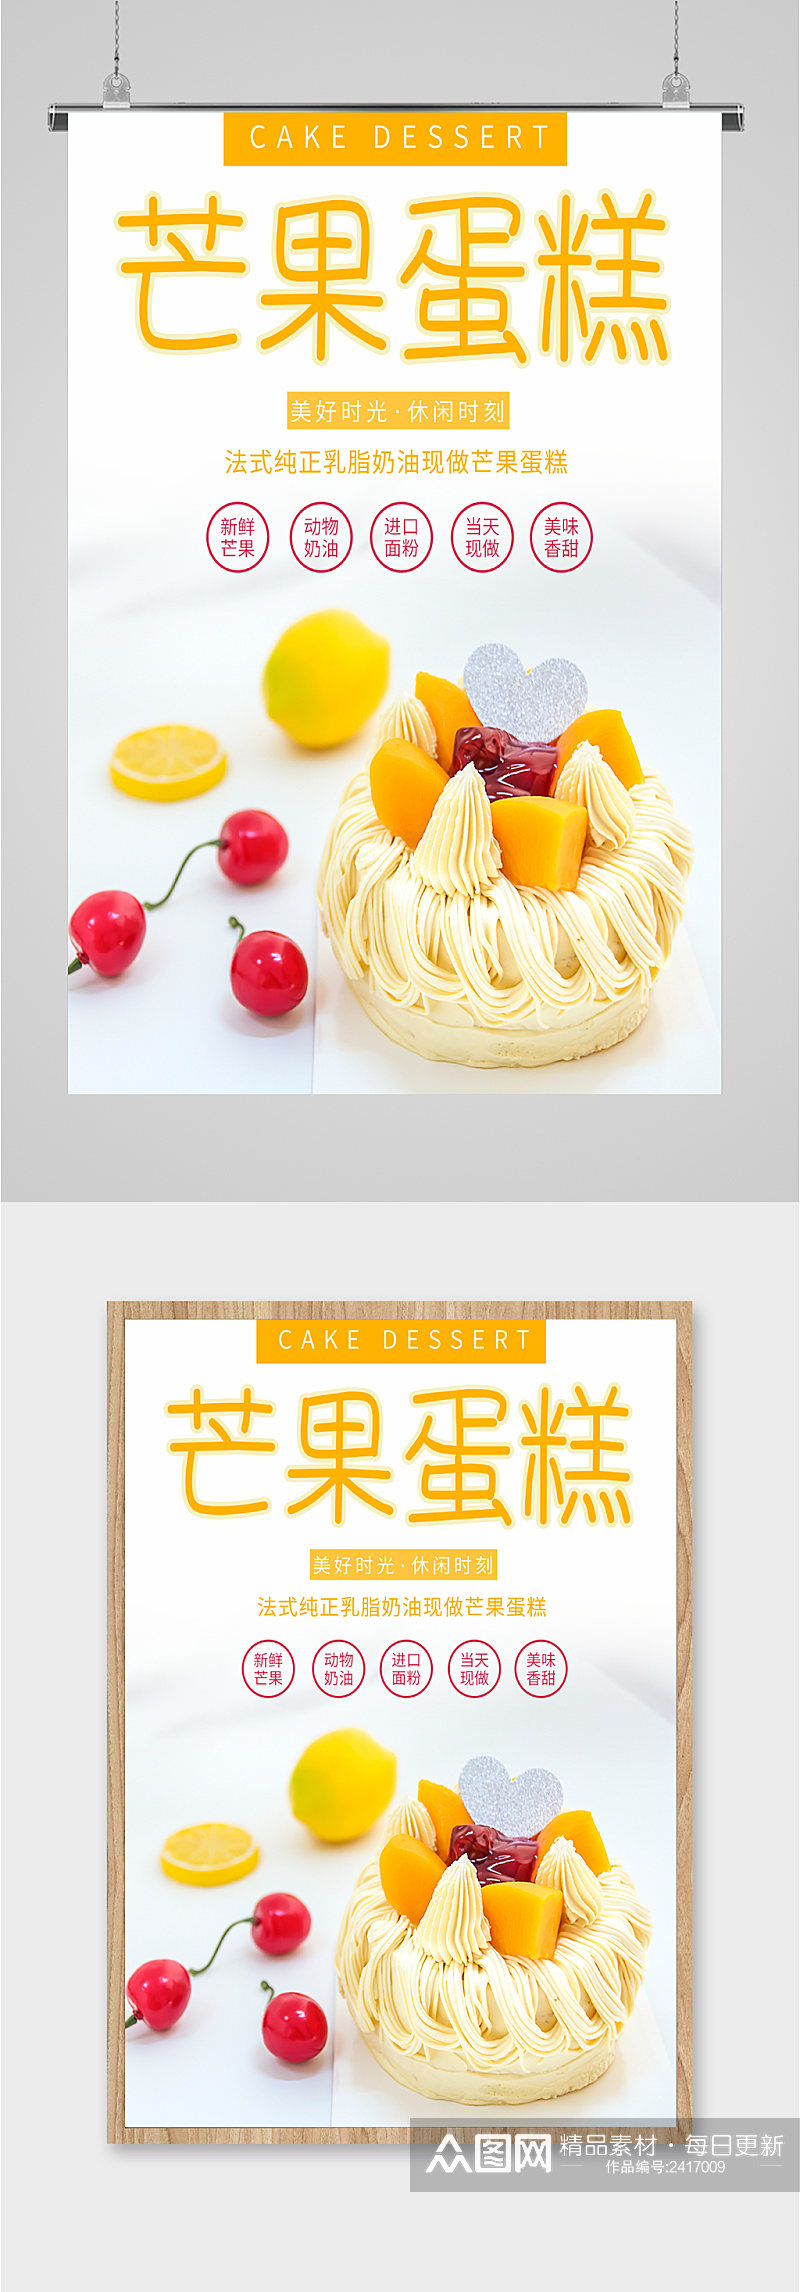 芒果蛋糕美食海报素材